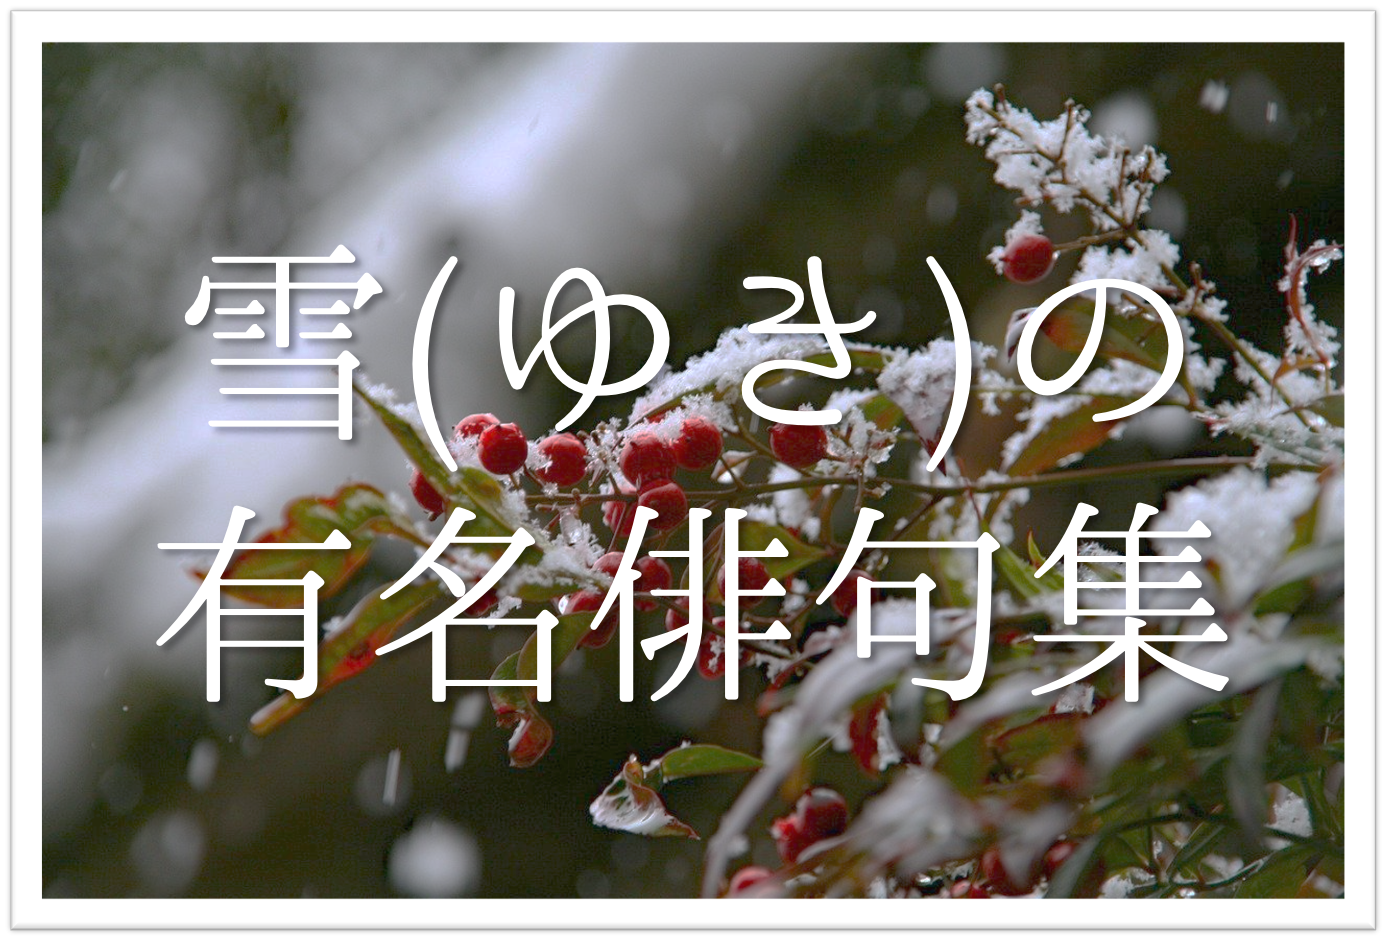 雪の有名俳句 選 知っておきたい 季語を含んだおすすめ俳句を紹介 俳句の教科書 俳句の作り方 有名俳句の解説サイト